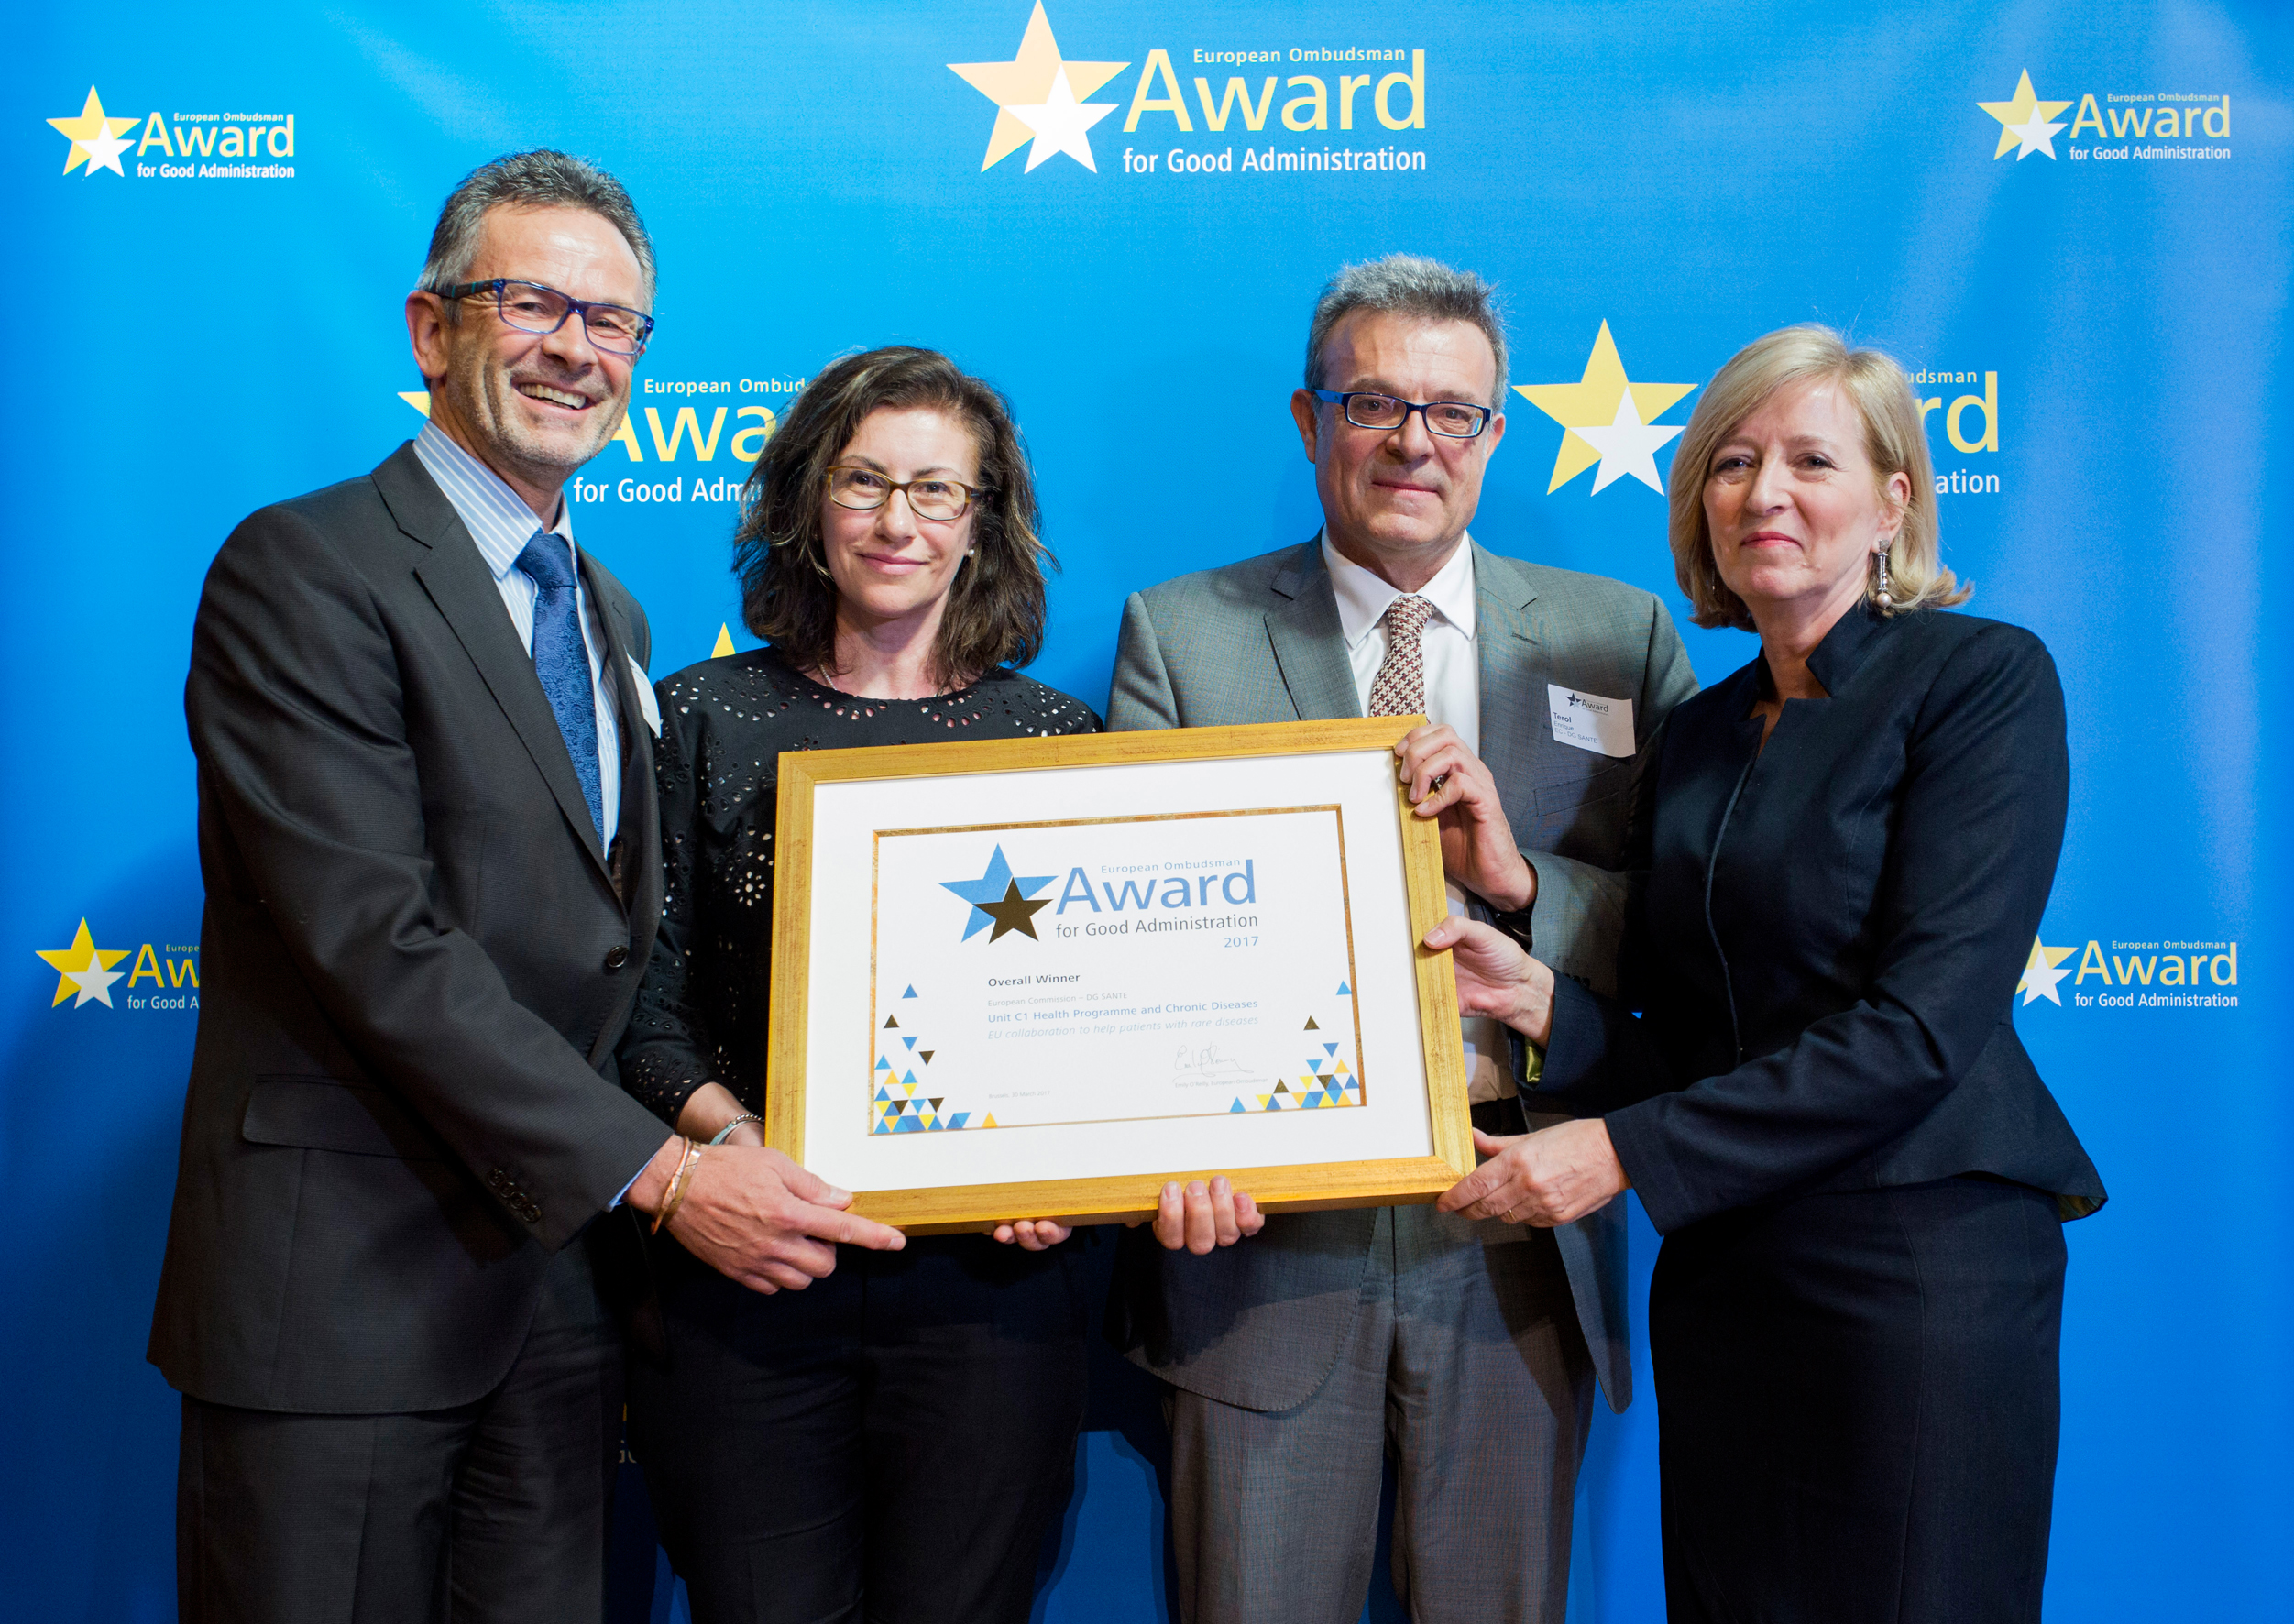 Οι τελικοί νικητές του βραβείου χρηστής διοίκησης της Ευρωπαίας Διαμεσολαβήτριας για το 2017, από τη Γενική Διεύθυνση Υγείας της Επιτροπής, παραλαμβάνουν το βραβείο τους από την Ευρωπαία Διαμεσολαβήτρια, Emily O’Reilly.